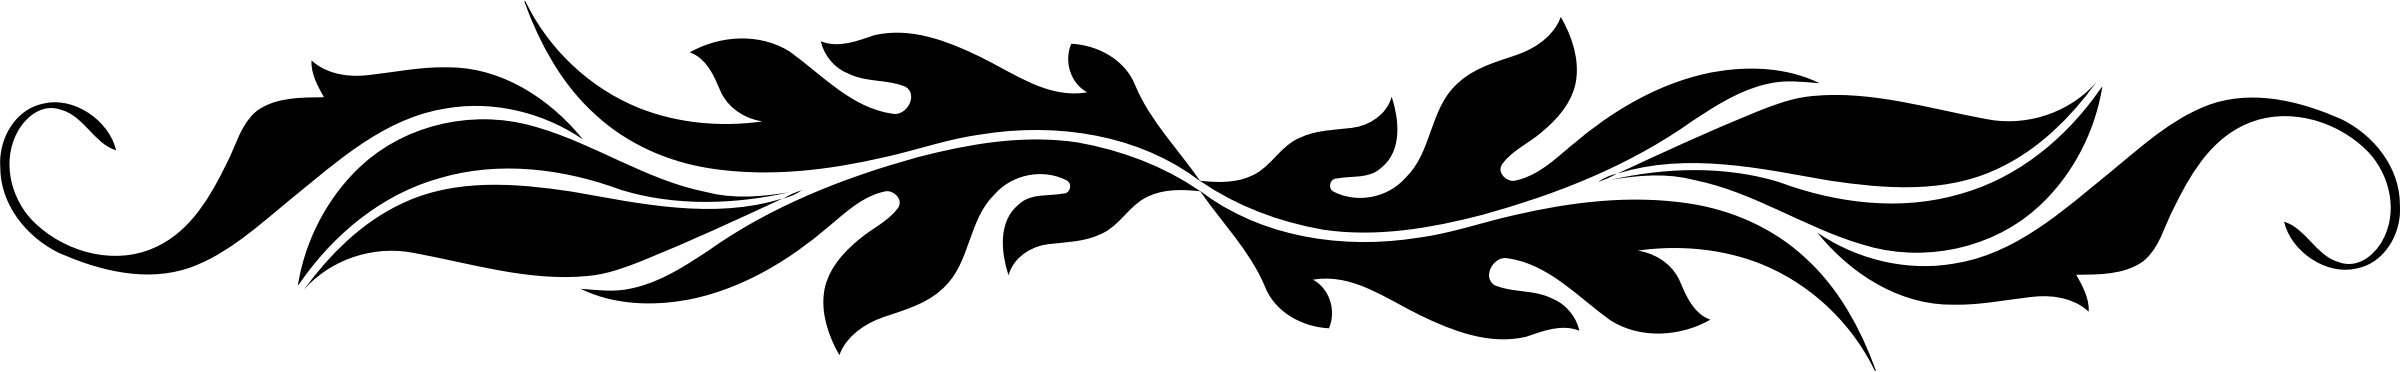 divider-5.png (640×160)